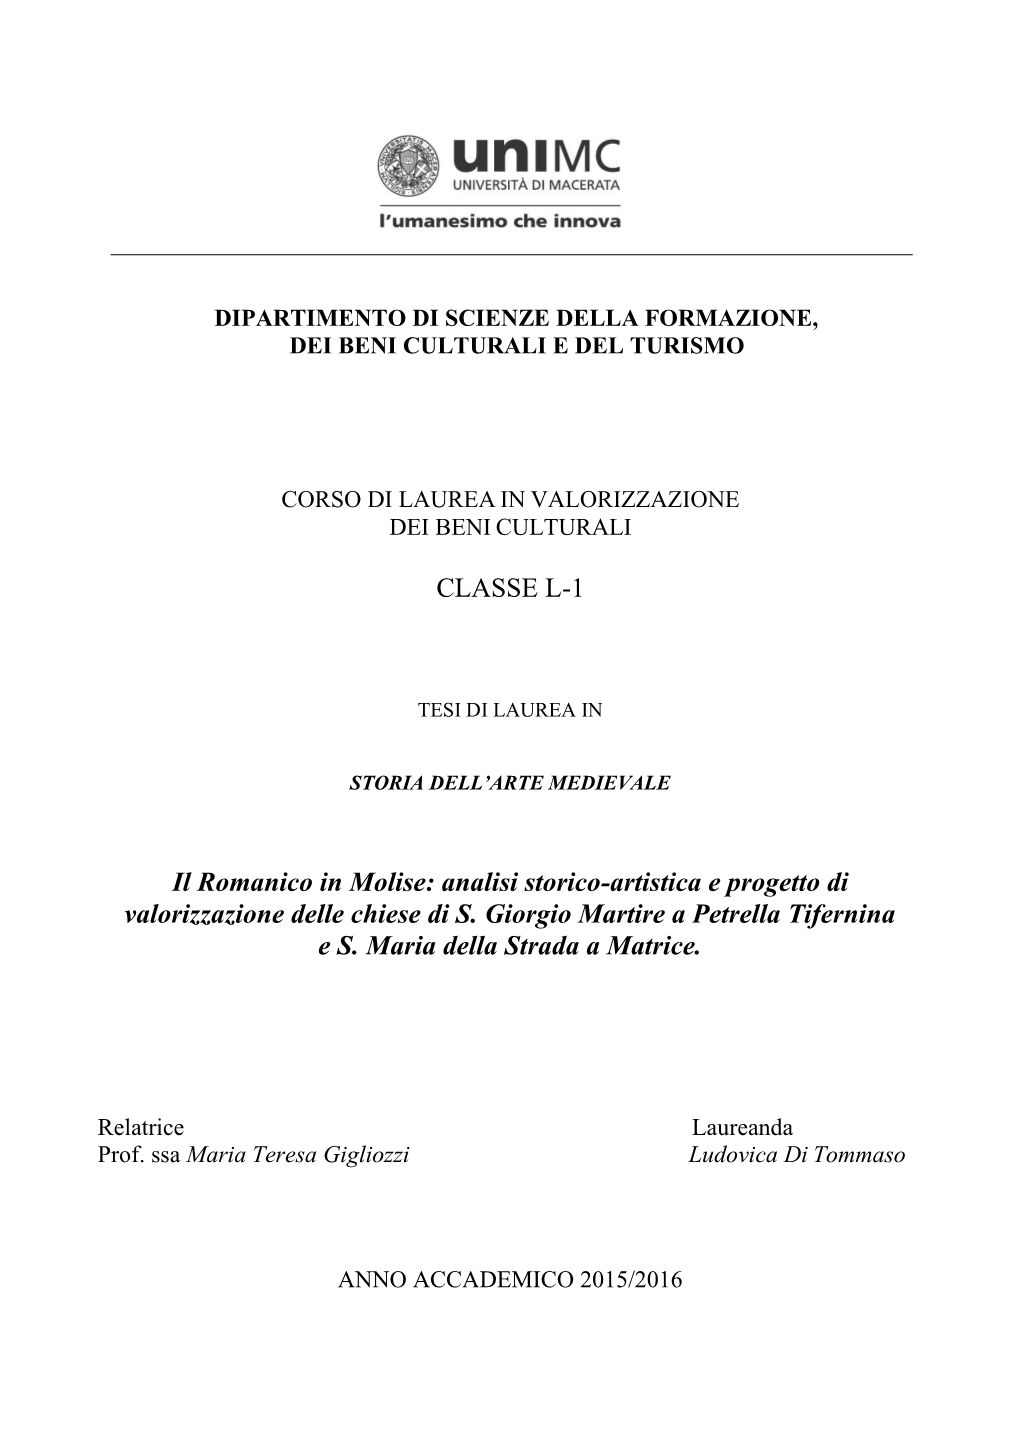 CLASSE L-1 Il Romanico in Molise: Analisi Storico-Artistica E Progetto Di Valorizzazione Delle Chiese Di S. Giorgio Martire a Pe